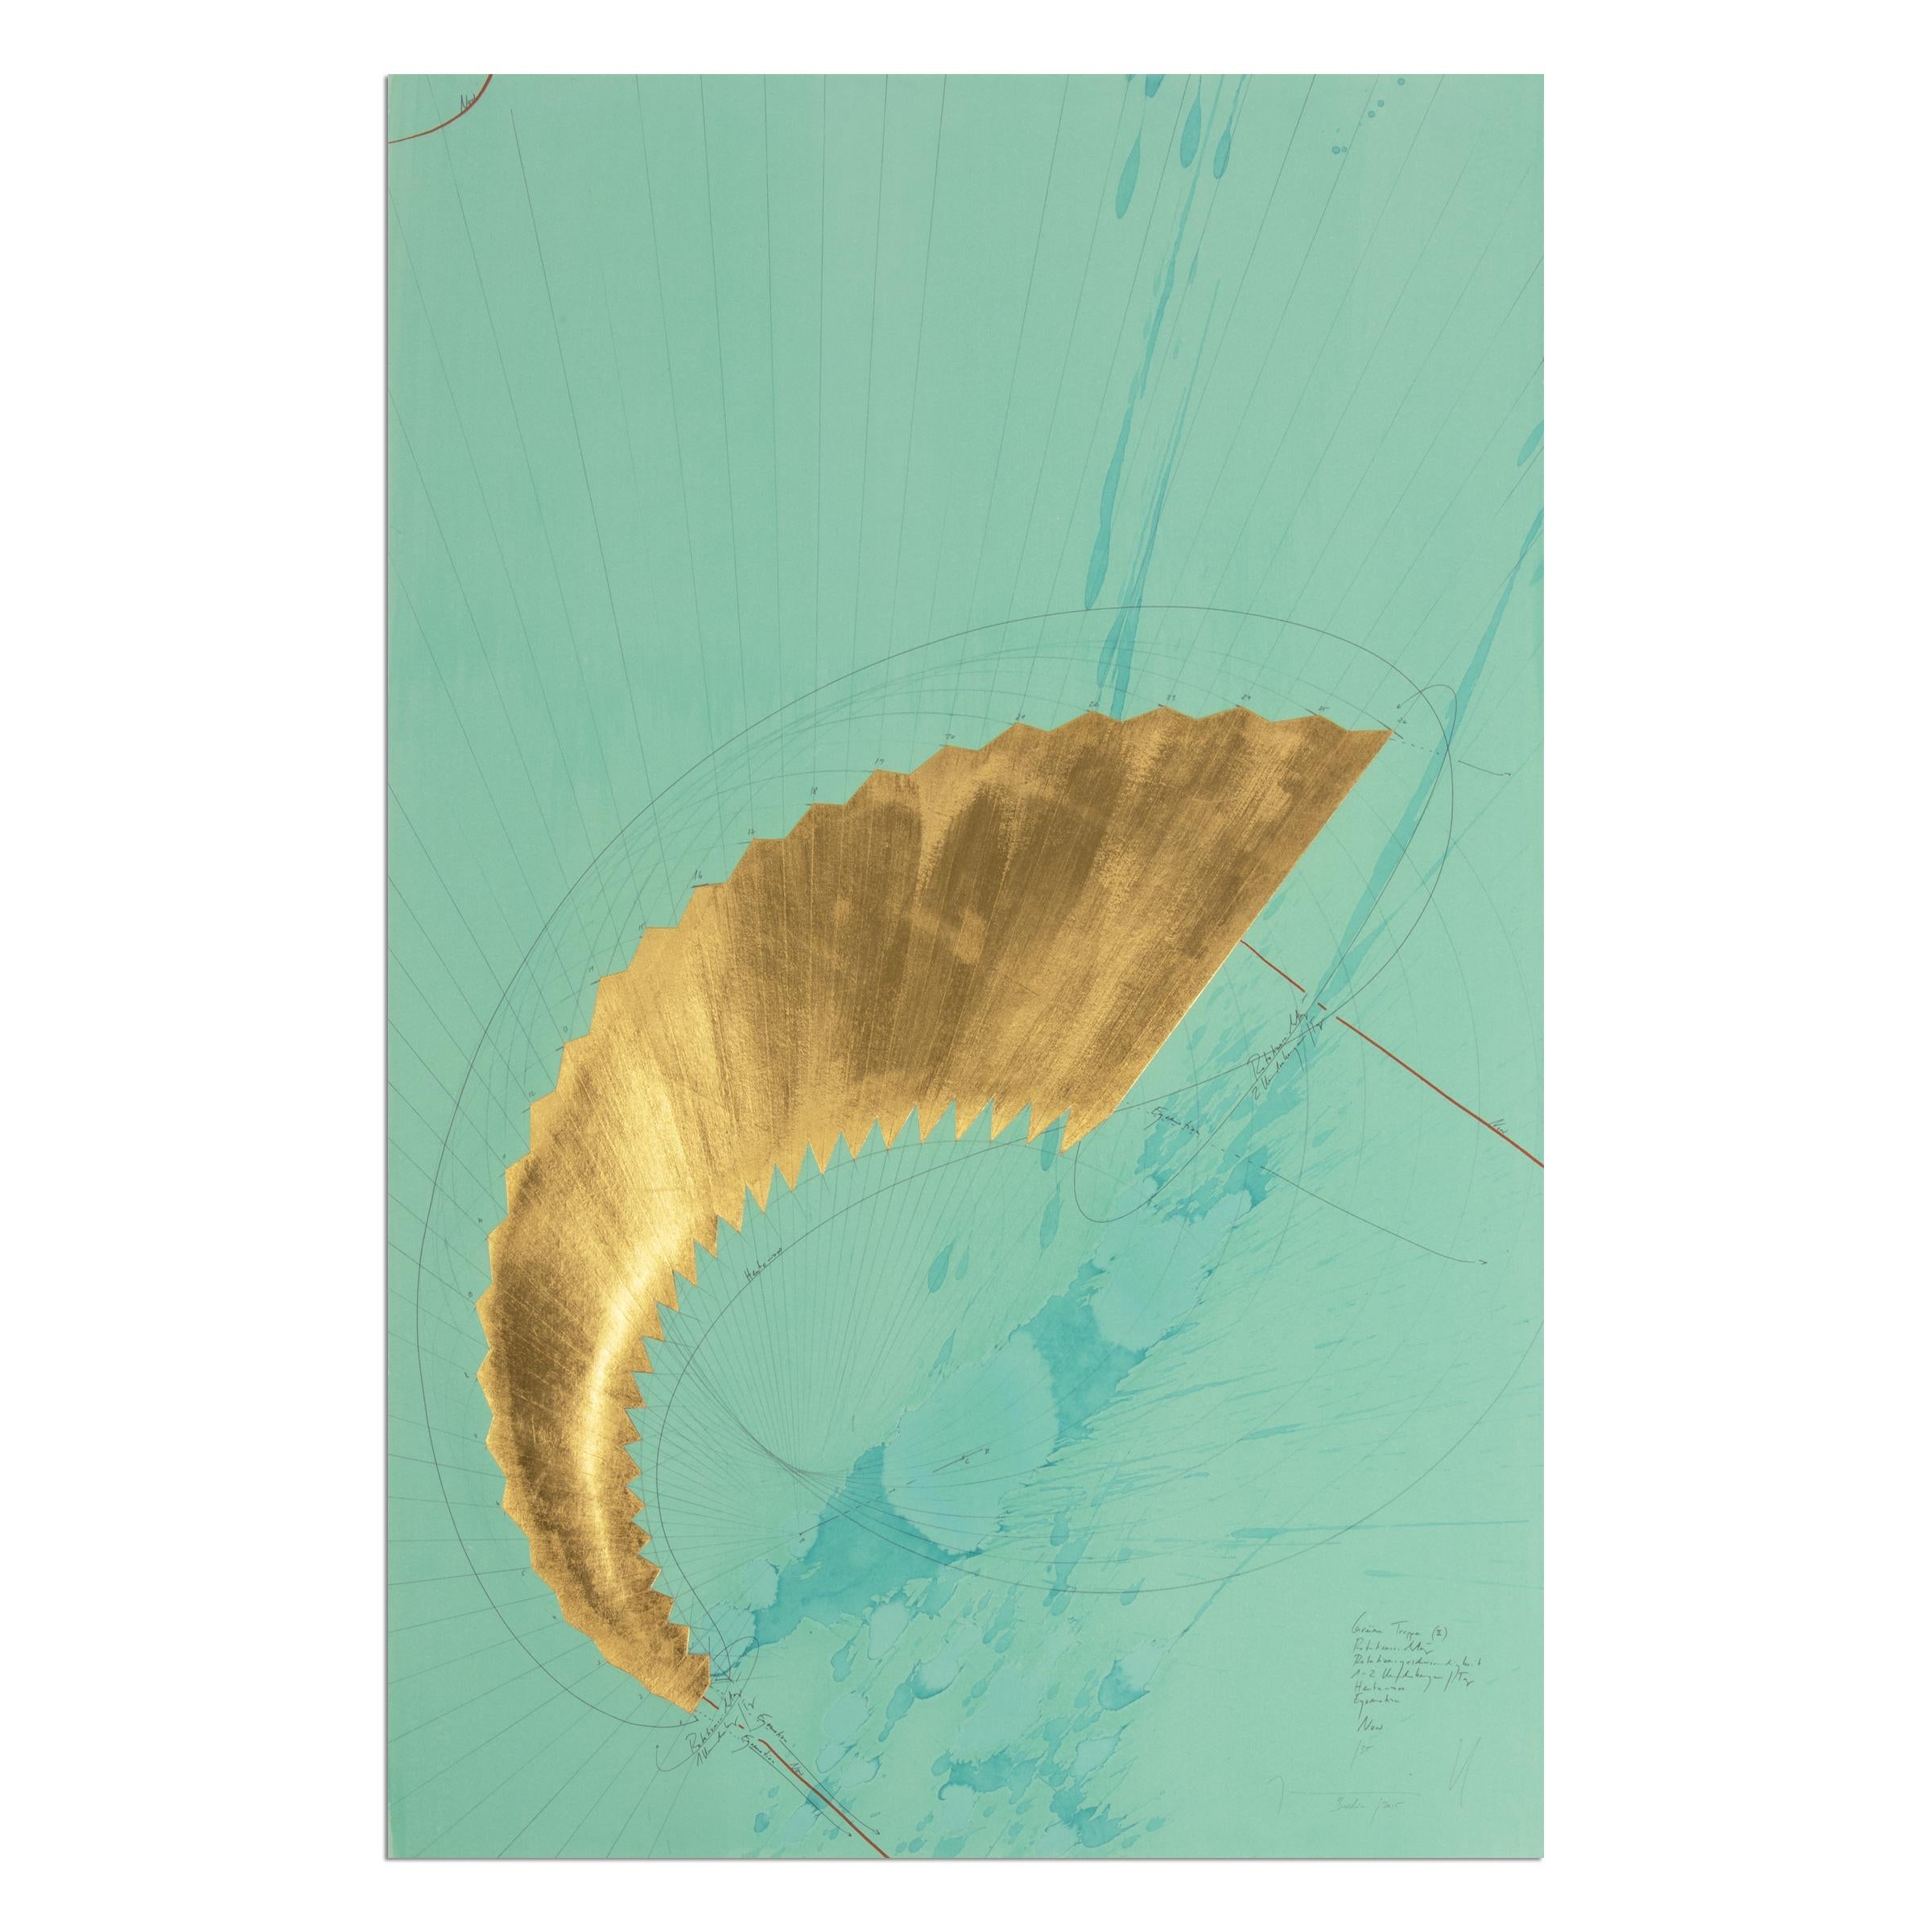 Jorinde Voigt (allemande, née en 1977)
Grüne Treppe (II), 2015
Support : Impression numérique, feuille d'or appliquée à la main, sur papier coton 320g
Dimensions : 80 x 51,8 cm : 80 x 51,8 cm
Édition de 35 exemplaires : signés à la main, numérotés